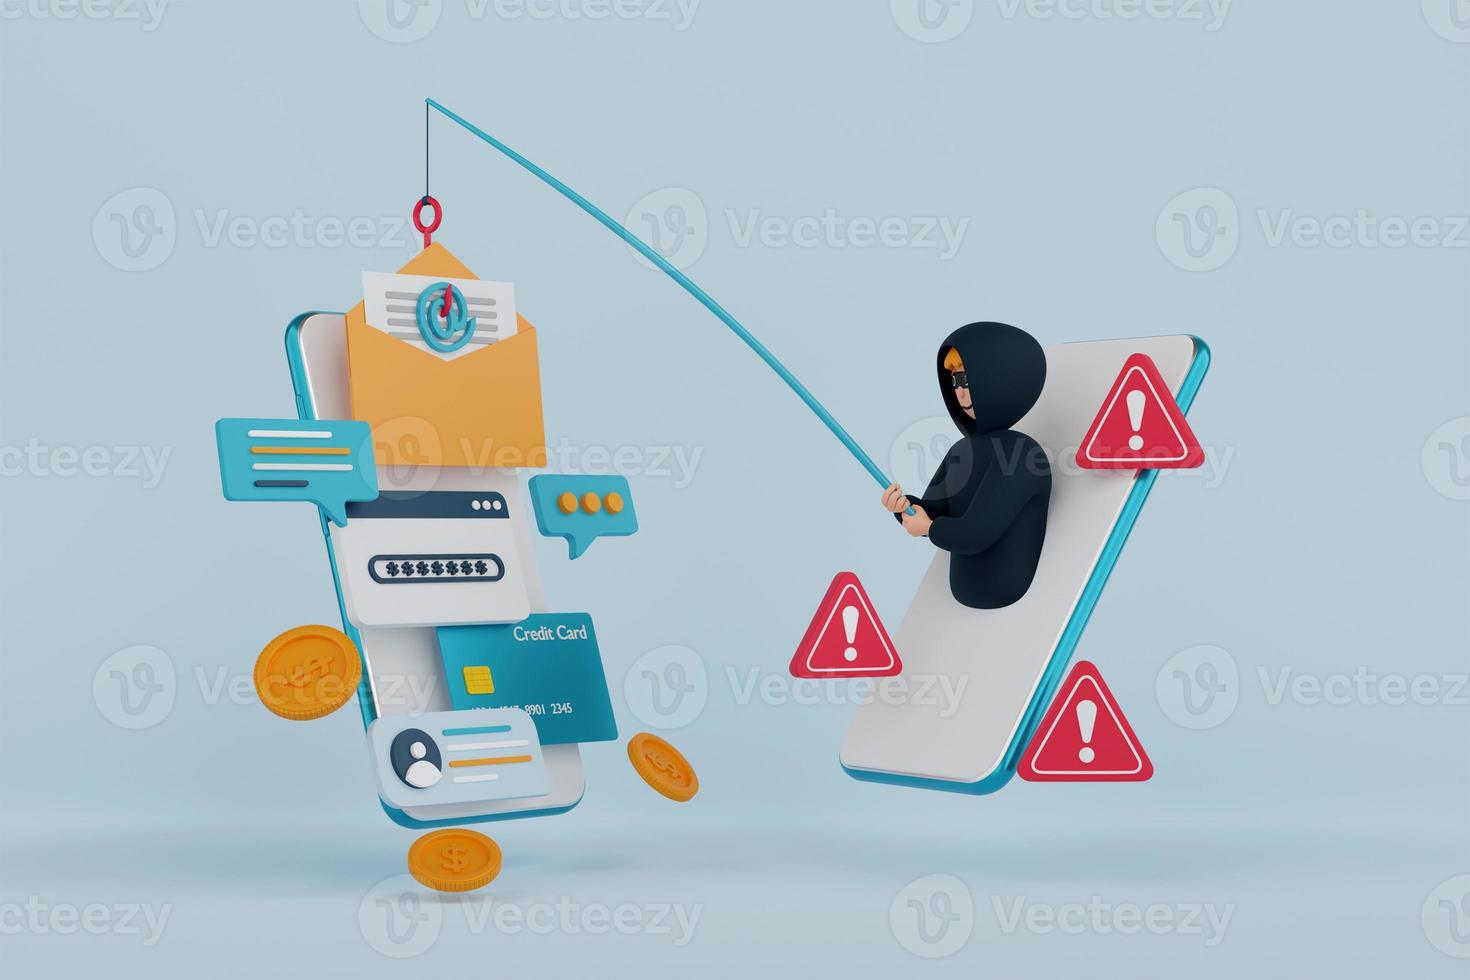 Ilustración 3D del concepto de phishing de datos, piratas informáticos y ciberdelincuentes que roban datos personales privados, contraseña, correo electrónico y tarjeta de crédito. estafa en línea, malware y phishing de contraseñas. foto